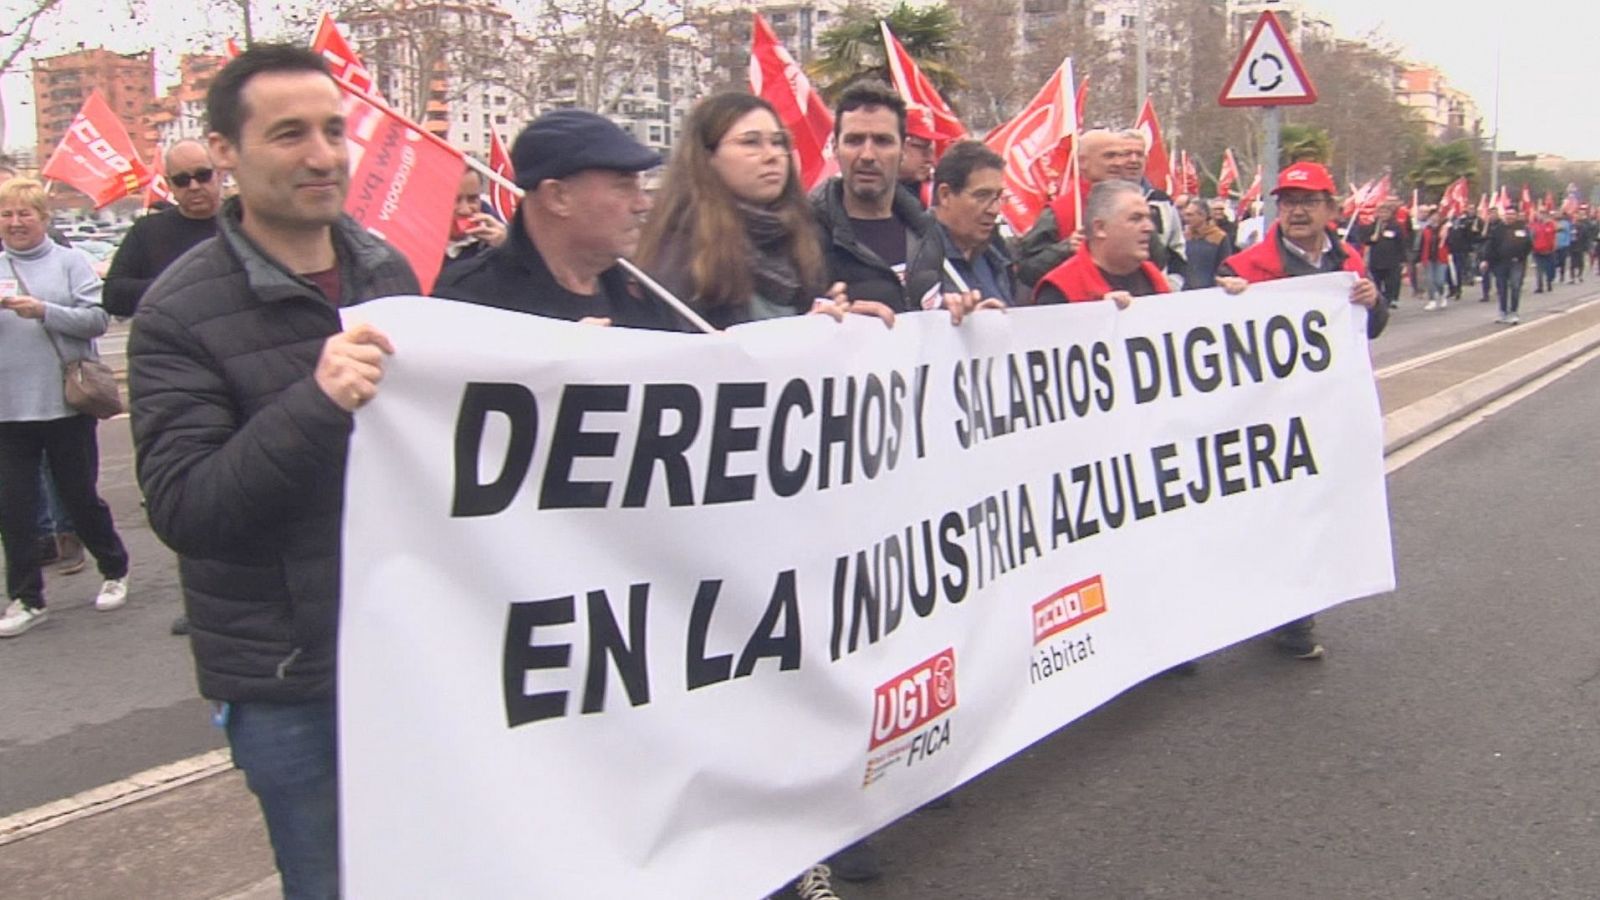 Treballadors del sector ceràmic protesten pel bloqueig en la negociació del conveni